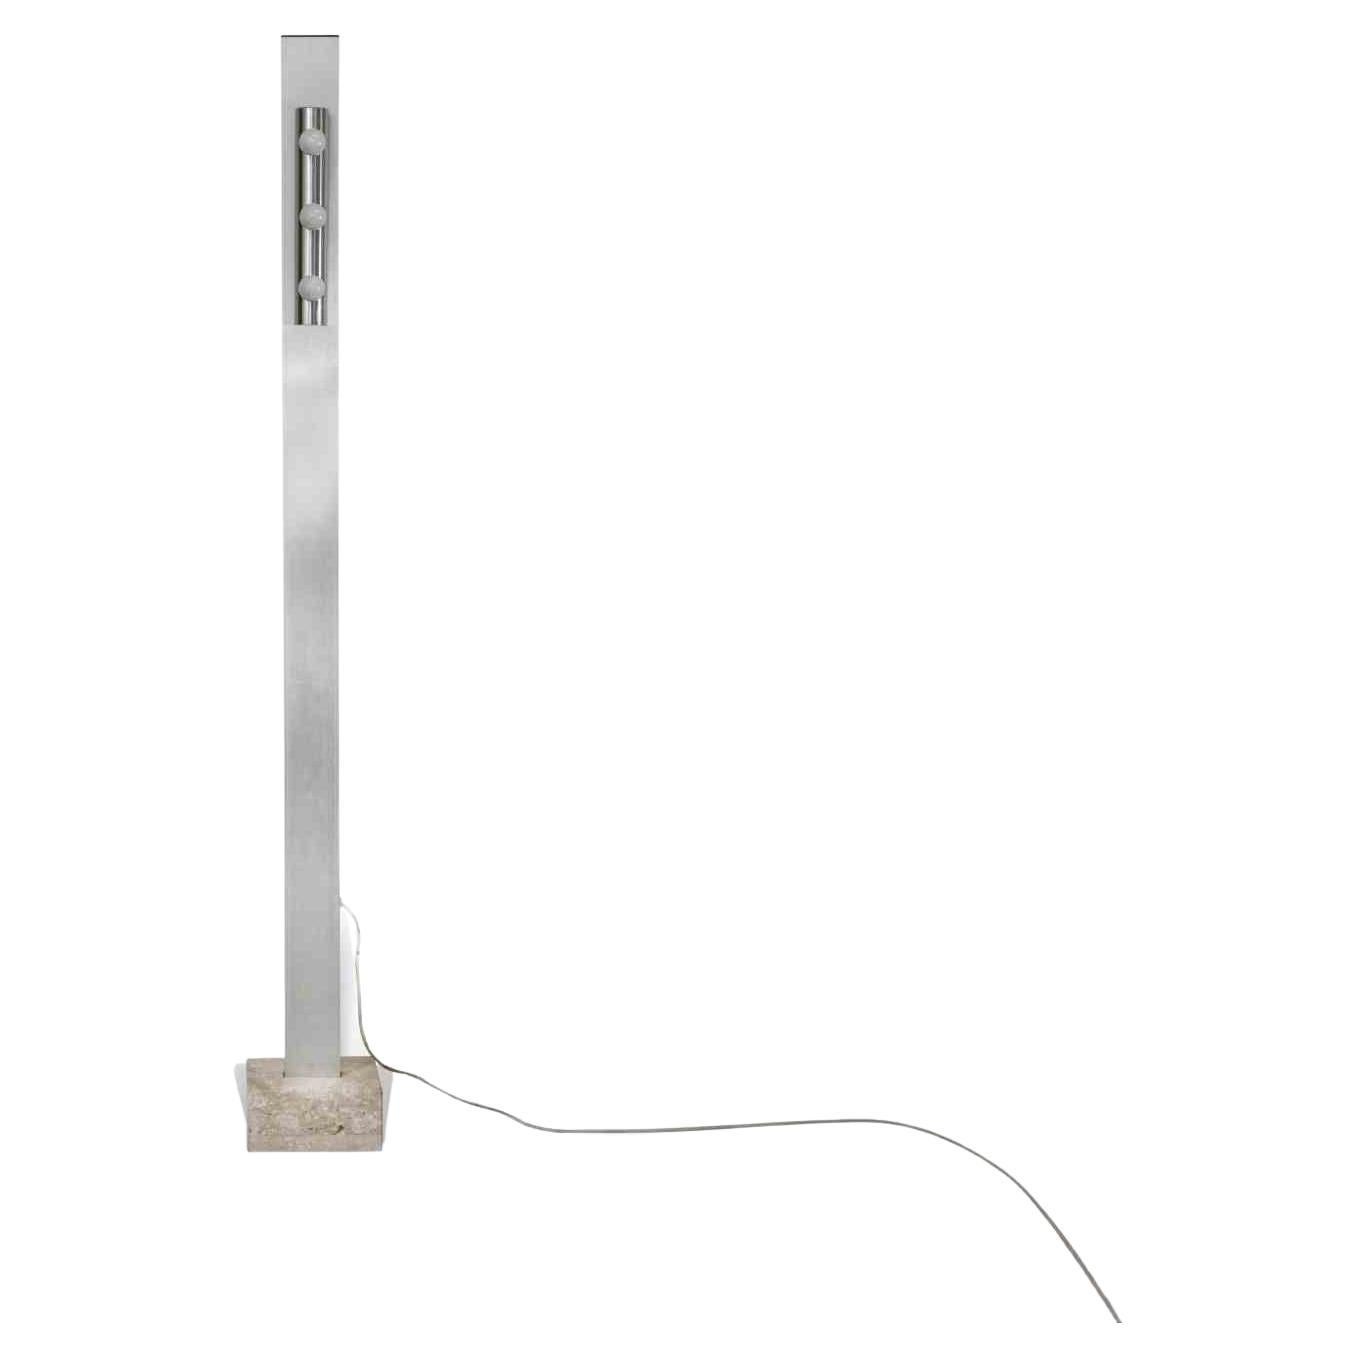 Le lampadaire Vintage Chromed est une lampe de conception originale réalisée dans les années 1970 par Targetti.

Un lampadaire chromé unique avec une base en marbre et six lampes.

Dimensions de la base : 25 x 17 cm

Parfait pour décorer votre